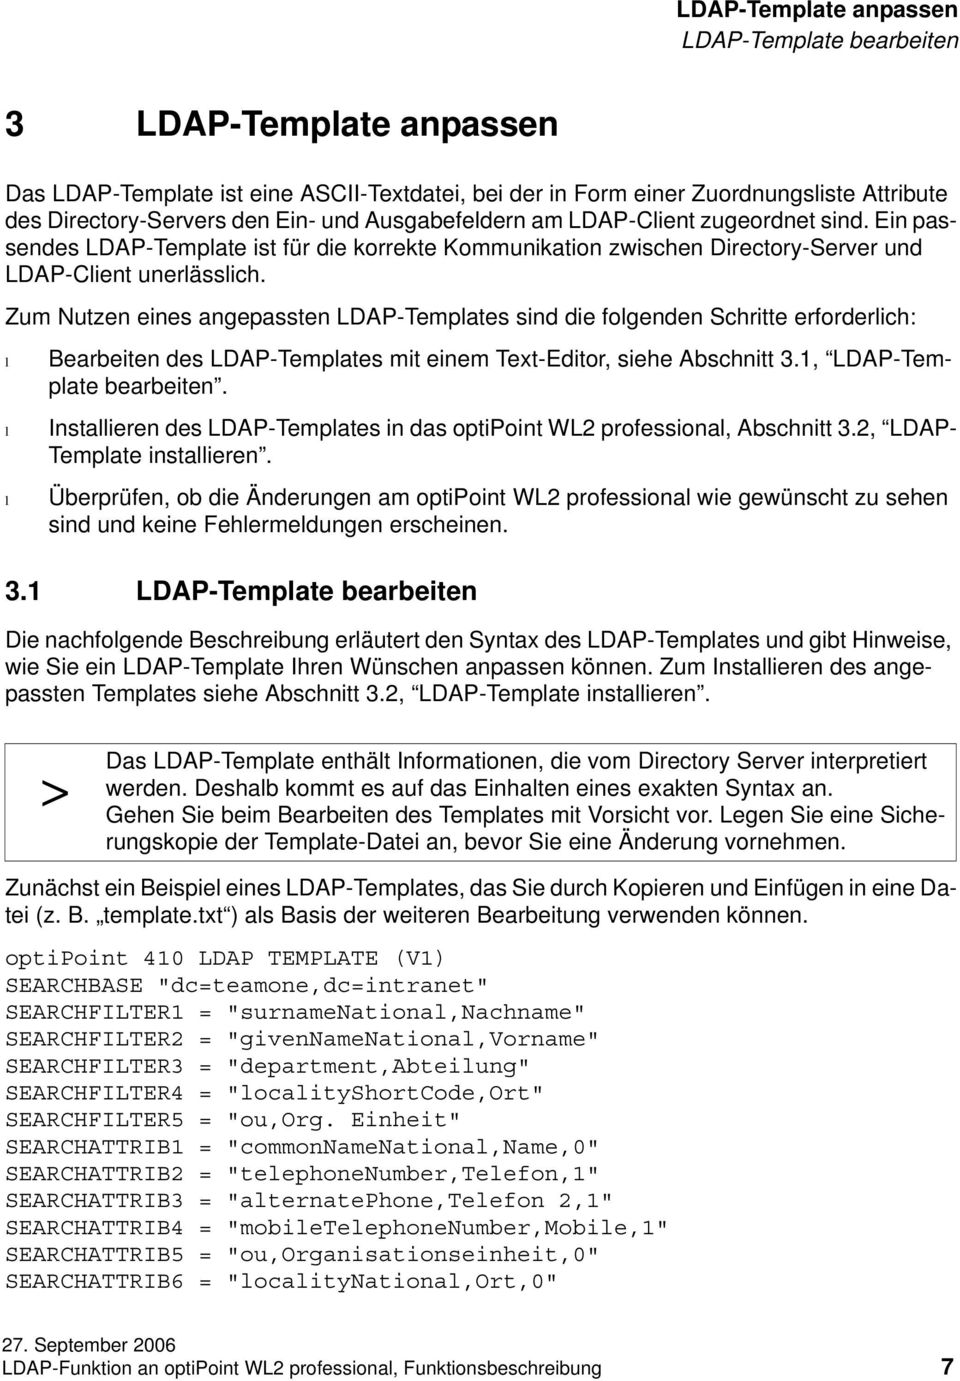 Zum Nutzen eines angepassten LDAP-Tempates sind die fogenden Schritte erforderich: Bearbeiten des LDAP-Tempates mit einem Text-Editor, siehe Abschnitt 3.1, LDAP-Tempate bearbeiten.